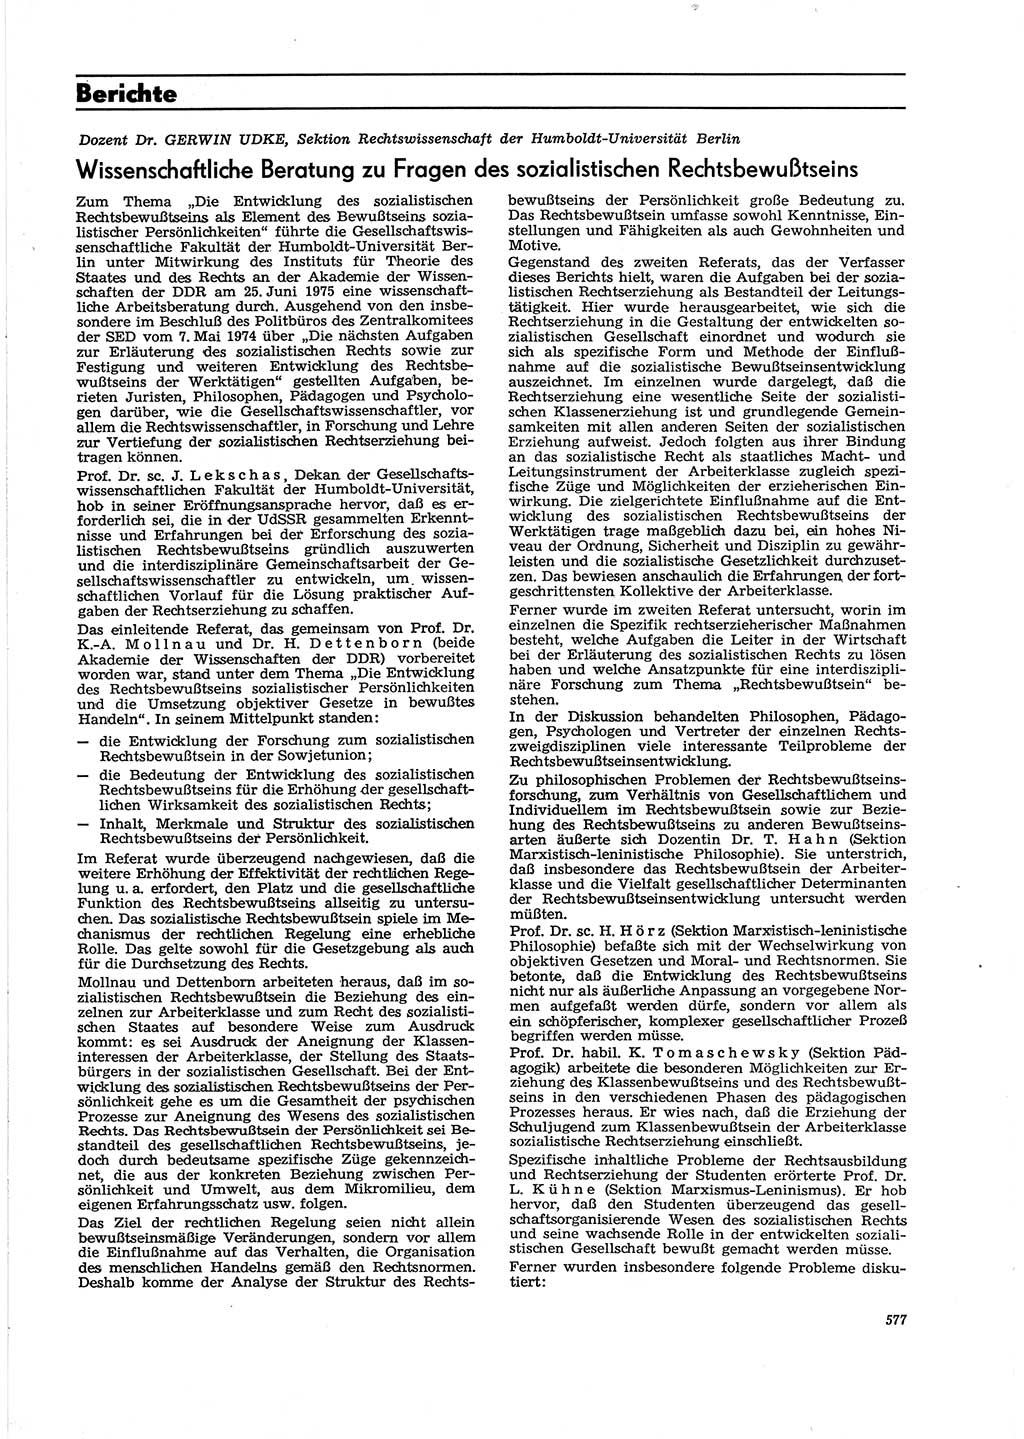 Neue Justiz (NJ), Zeitschrift für Recht und Rechtswissenschaft [Deutsche Demokratische Republik (DDR)], 29. Jahrgang 1975, Seite 577 (NJ DDR 1975, S. 577)